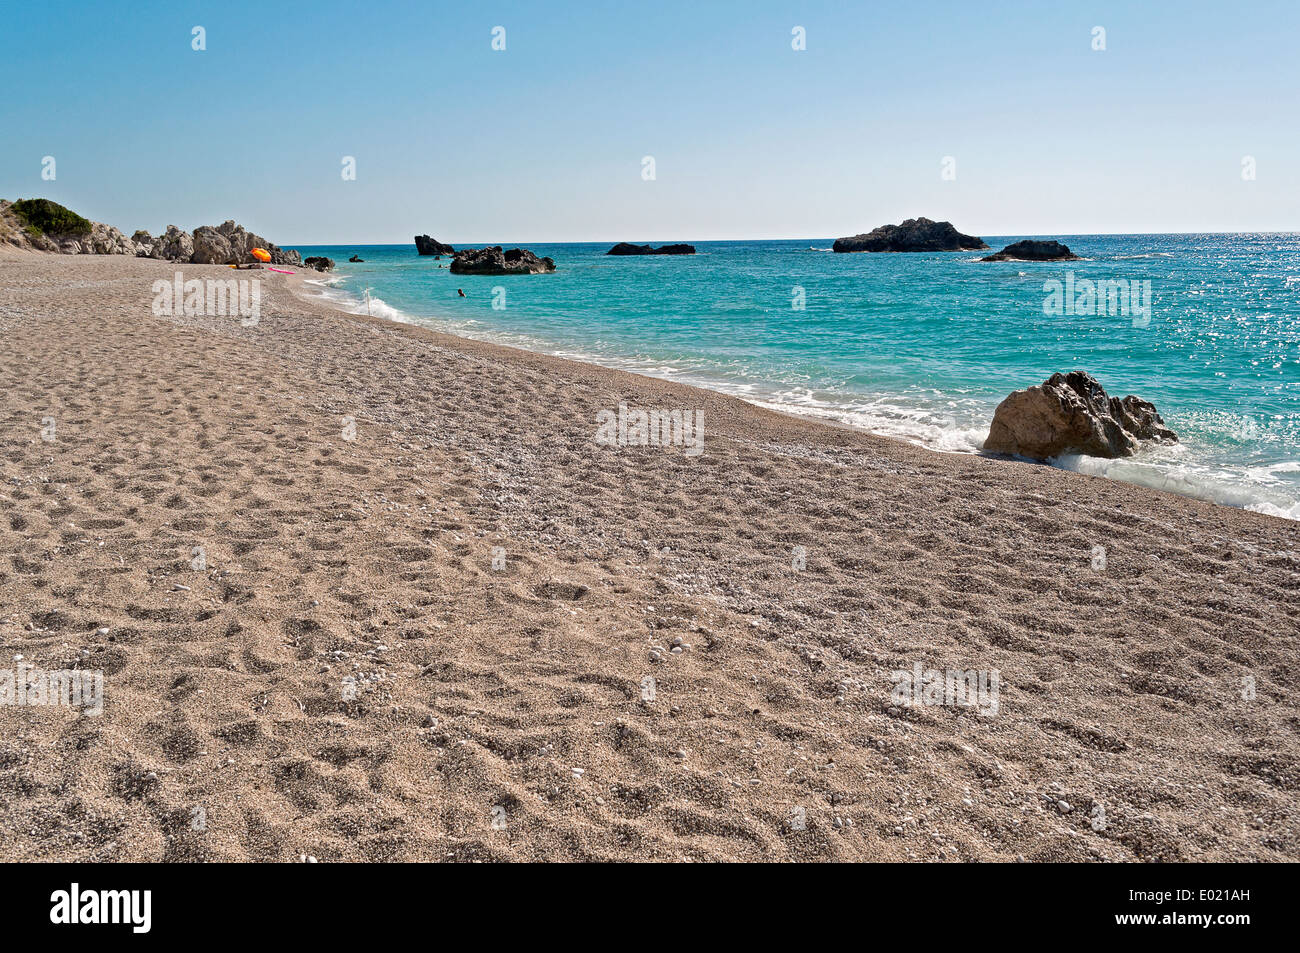 Una foto di Kathisma spiaggia con il esotiche acque blu cristalline in Lefkada, parte delle isole Ionie in Grecia Foto Stock